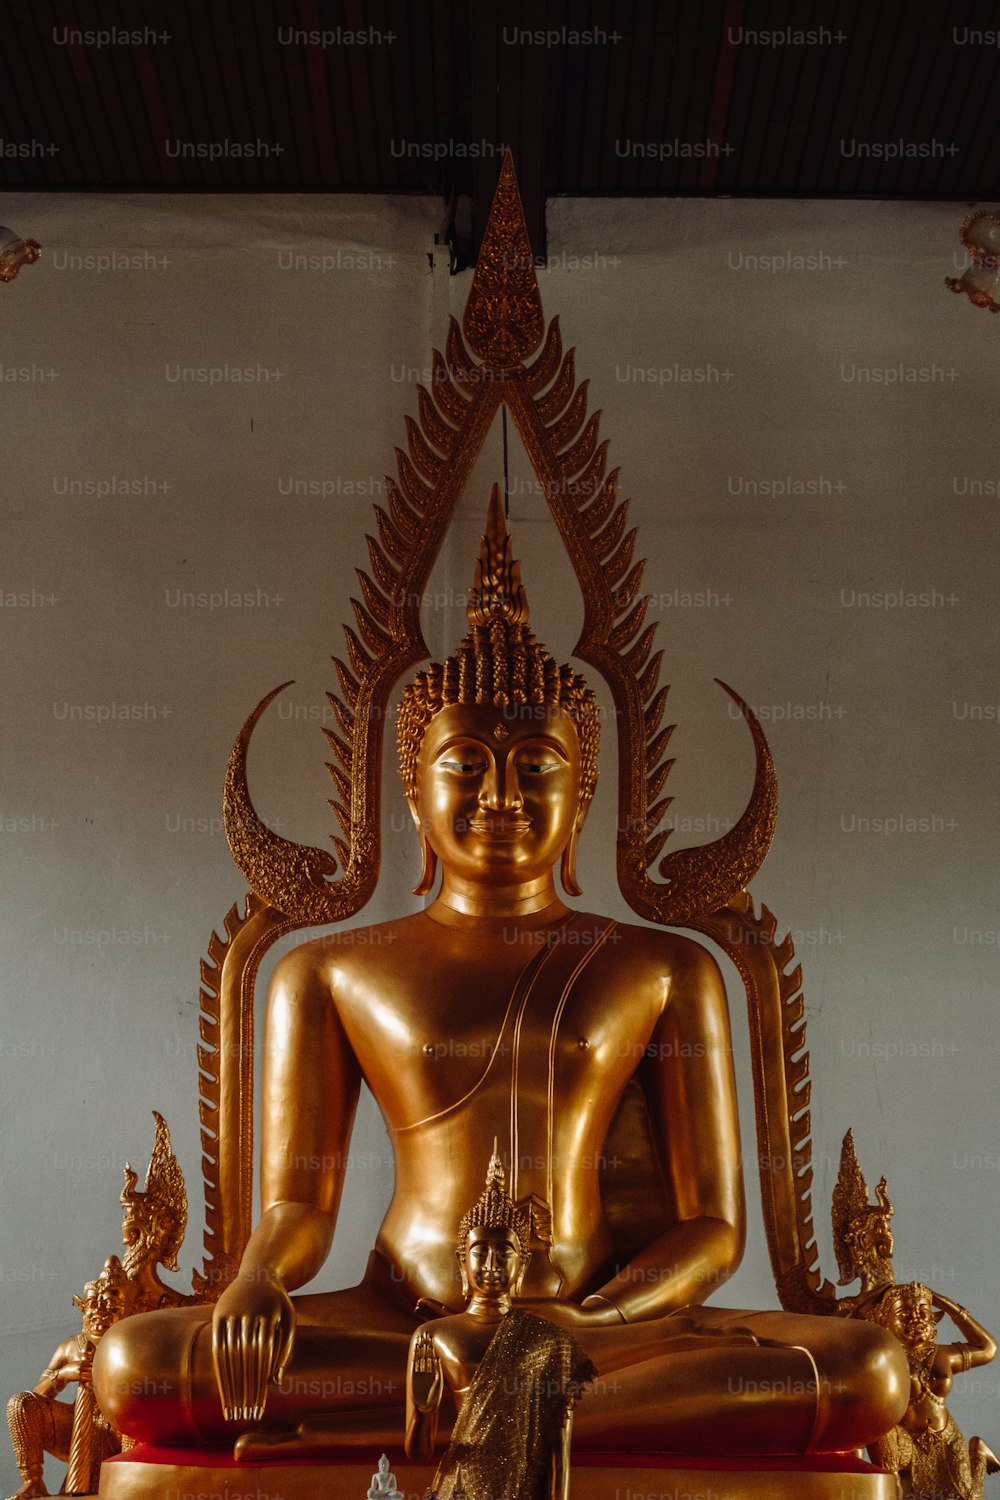 Eine goldene Buddha-Statue sitzt auf einem Tisch